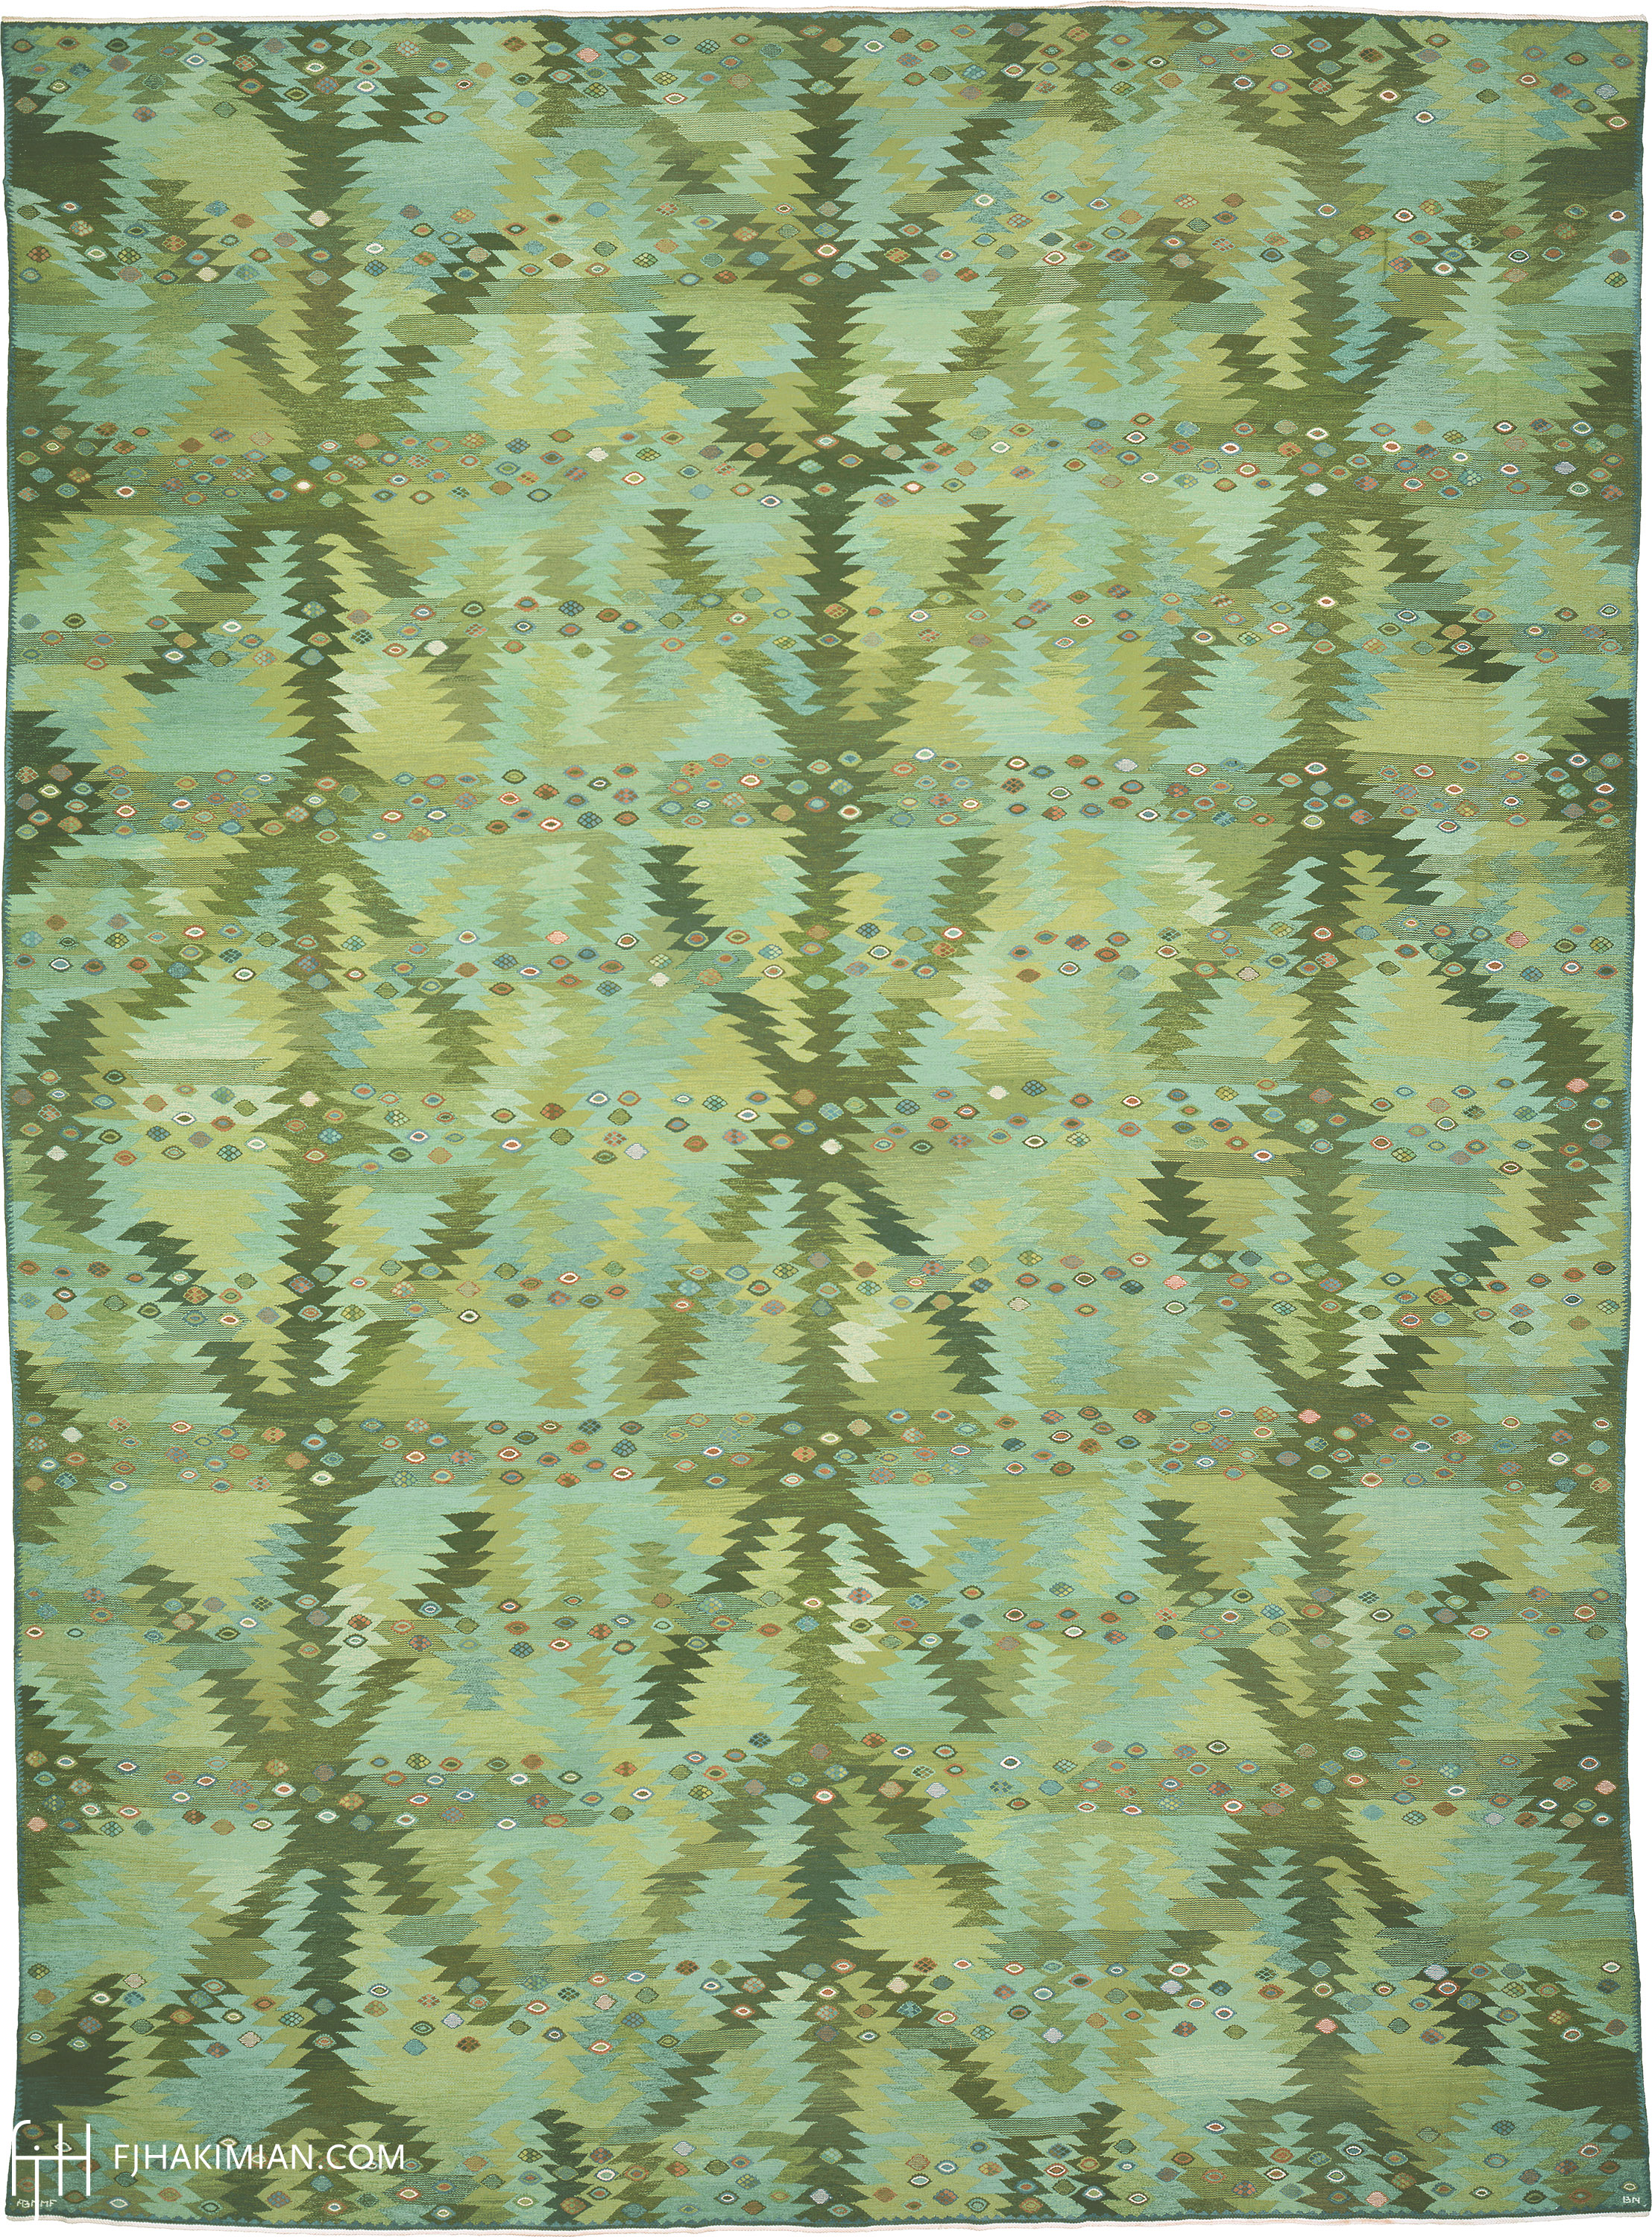 FJ Hakimian | 02954 | Vintage Swedish Carpet